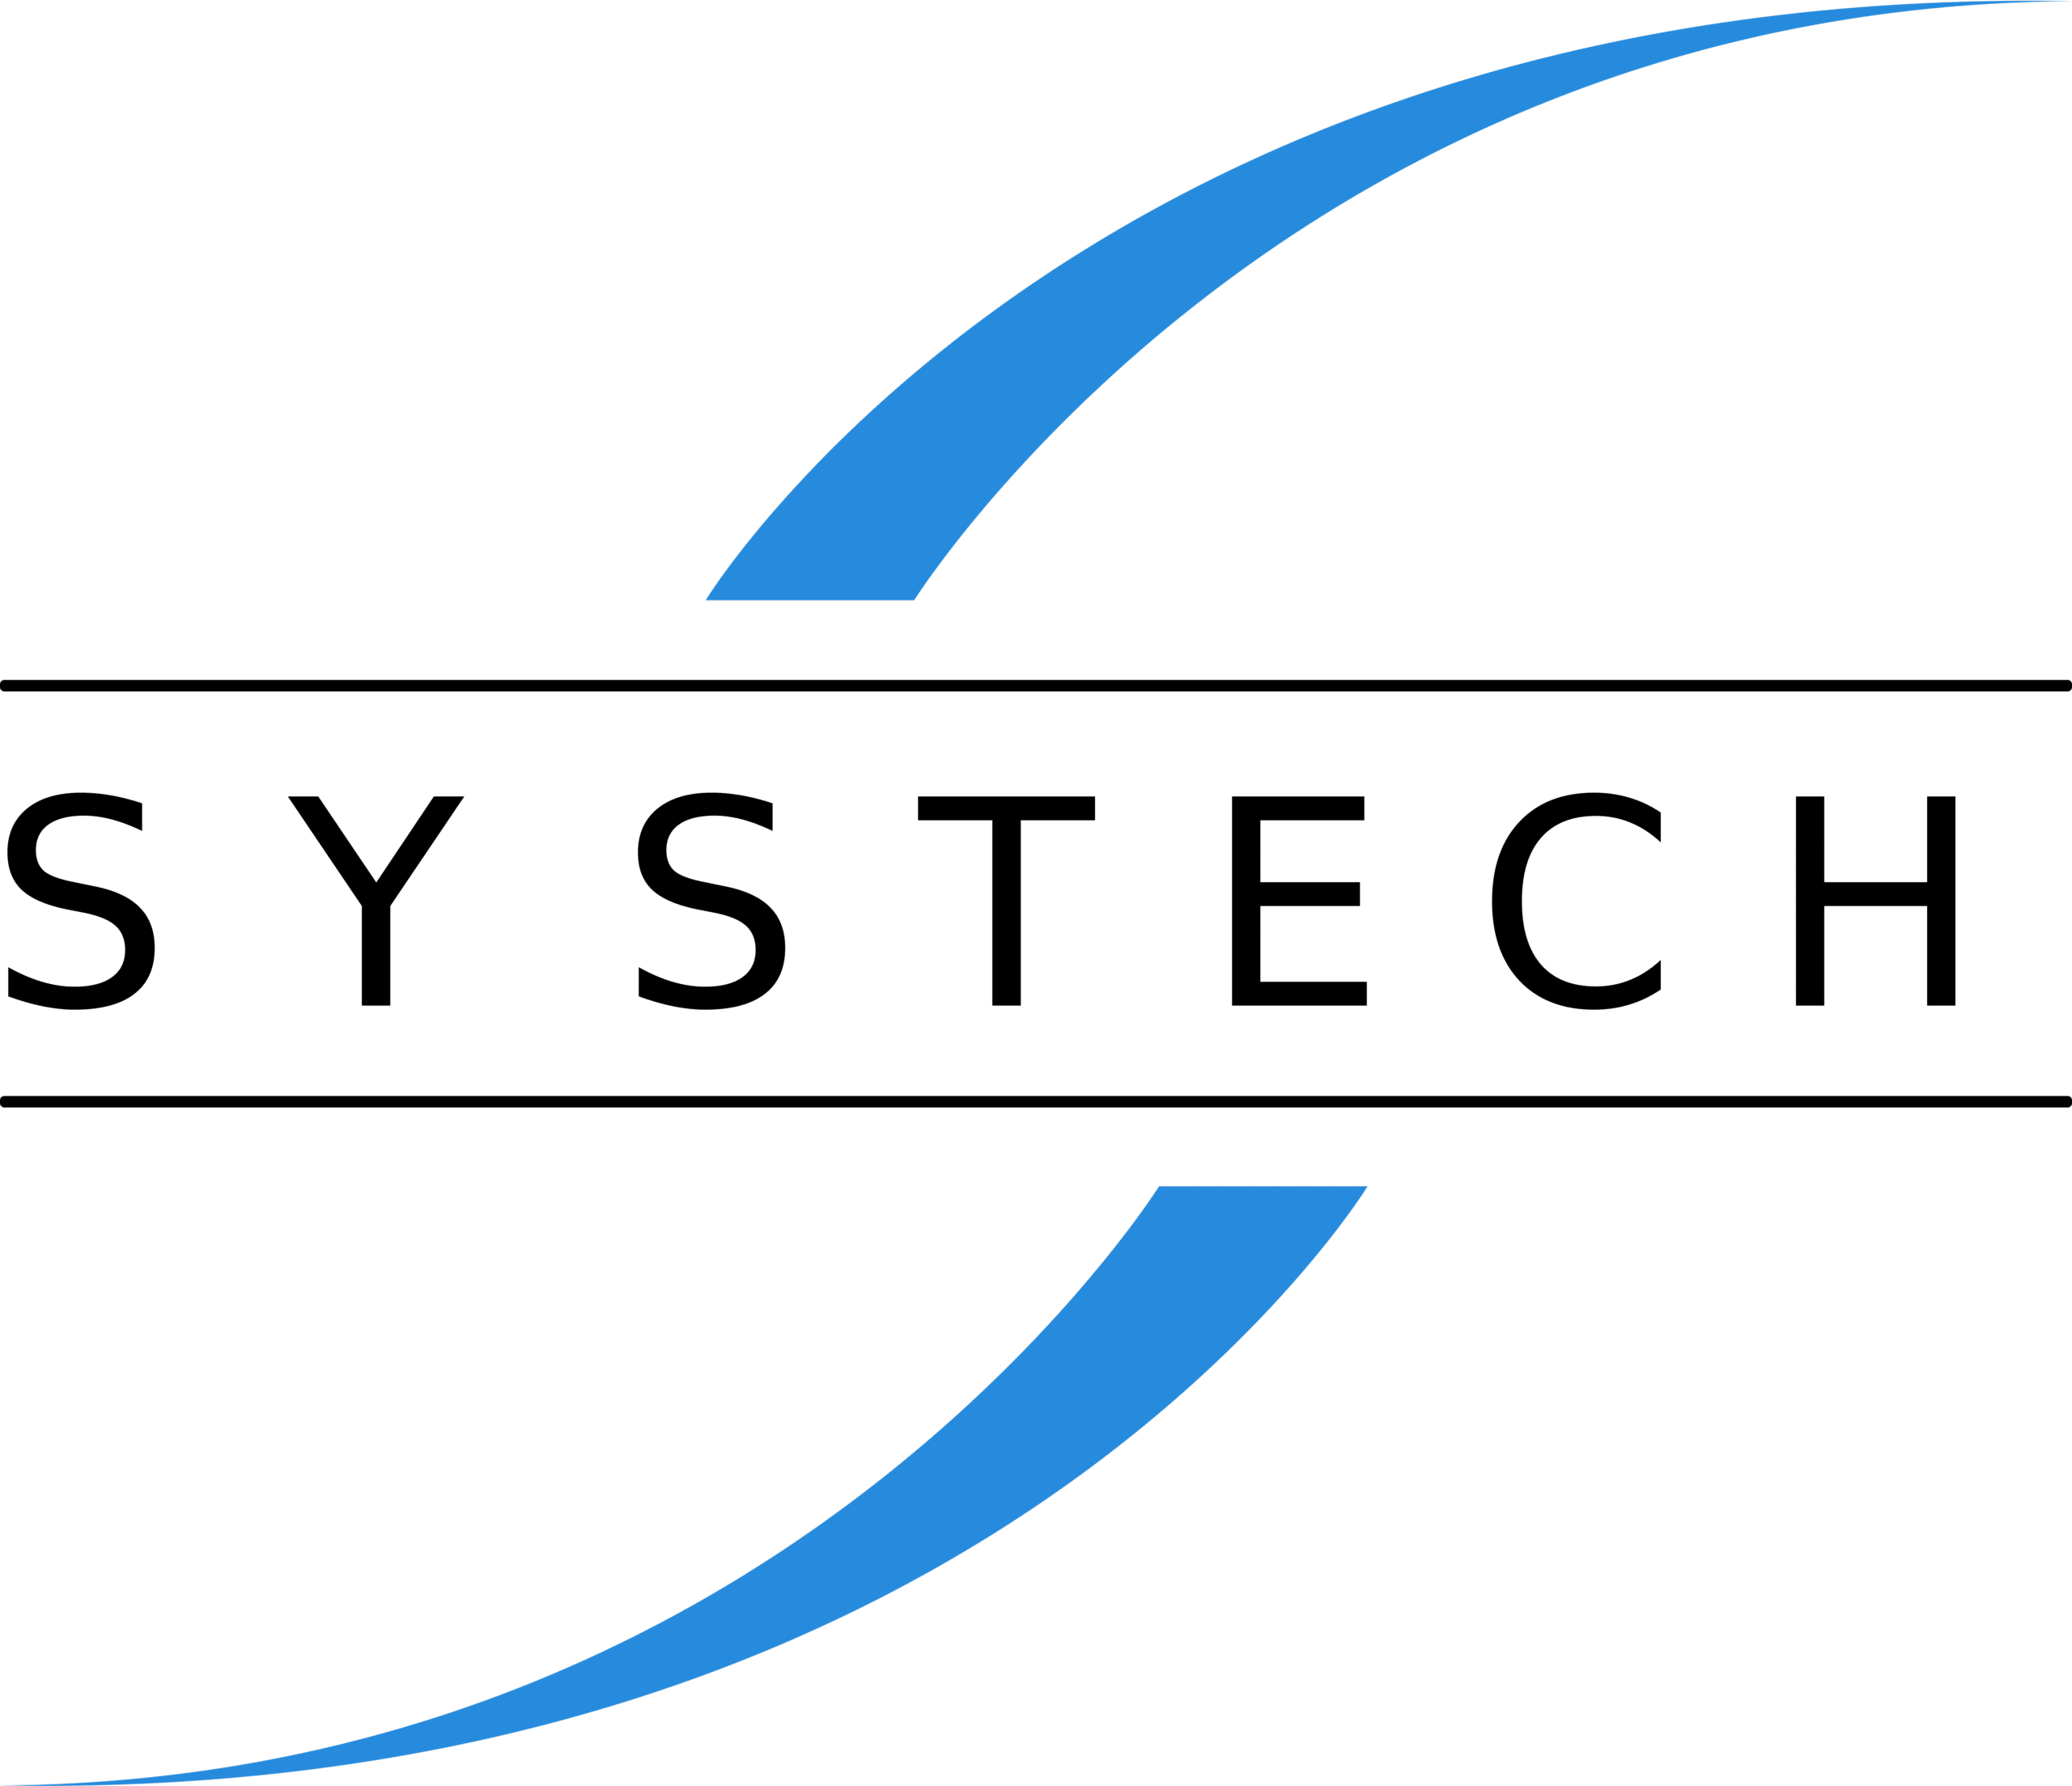 Systech logo editable